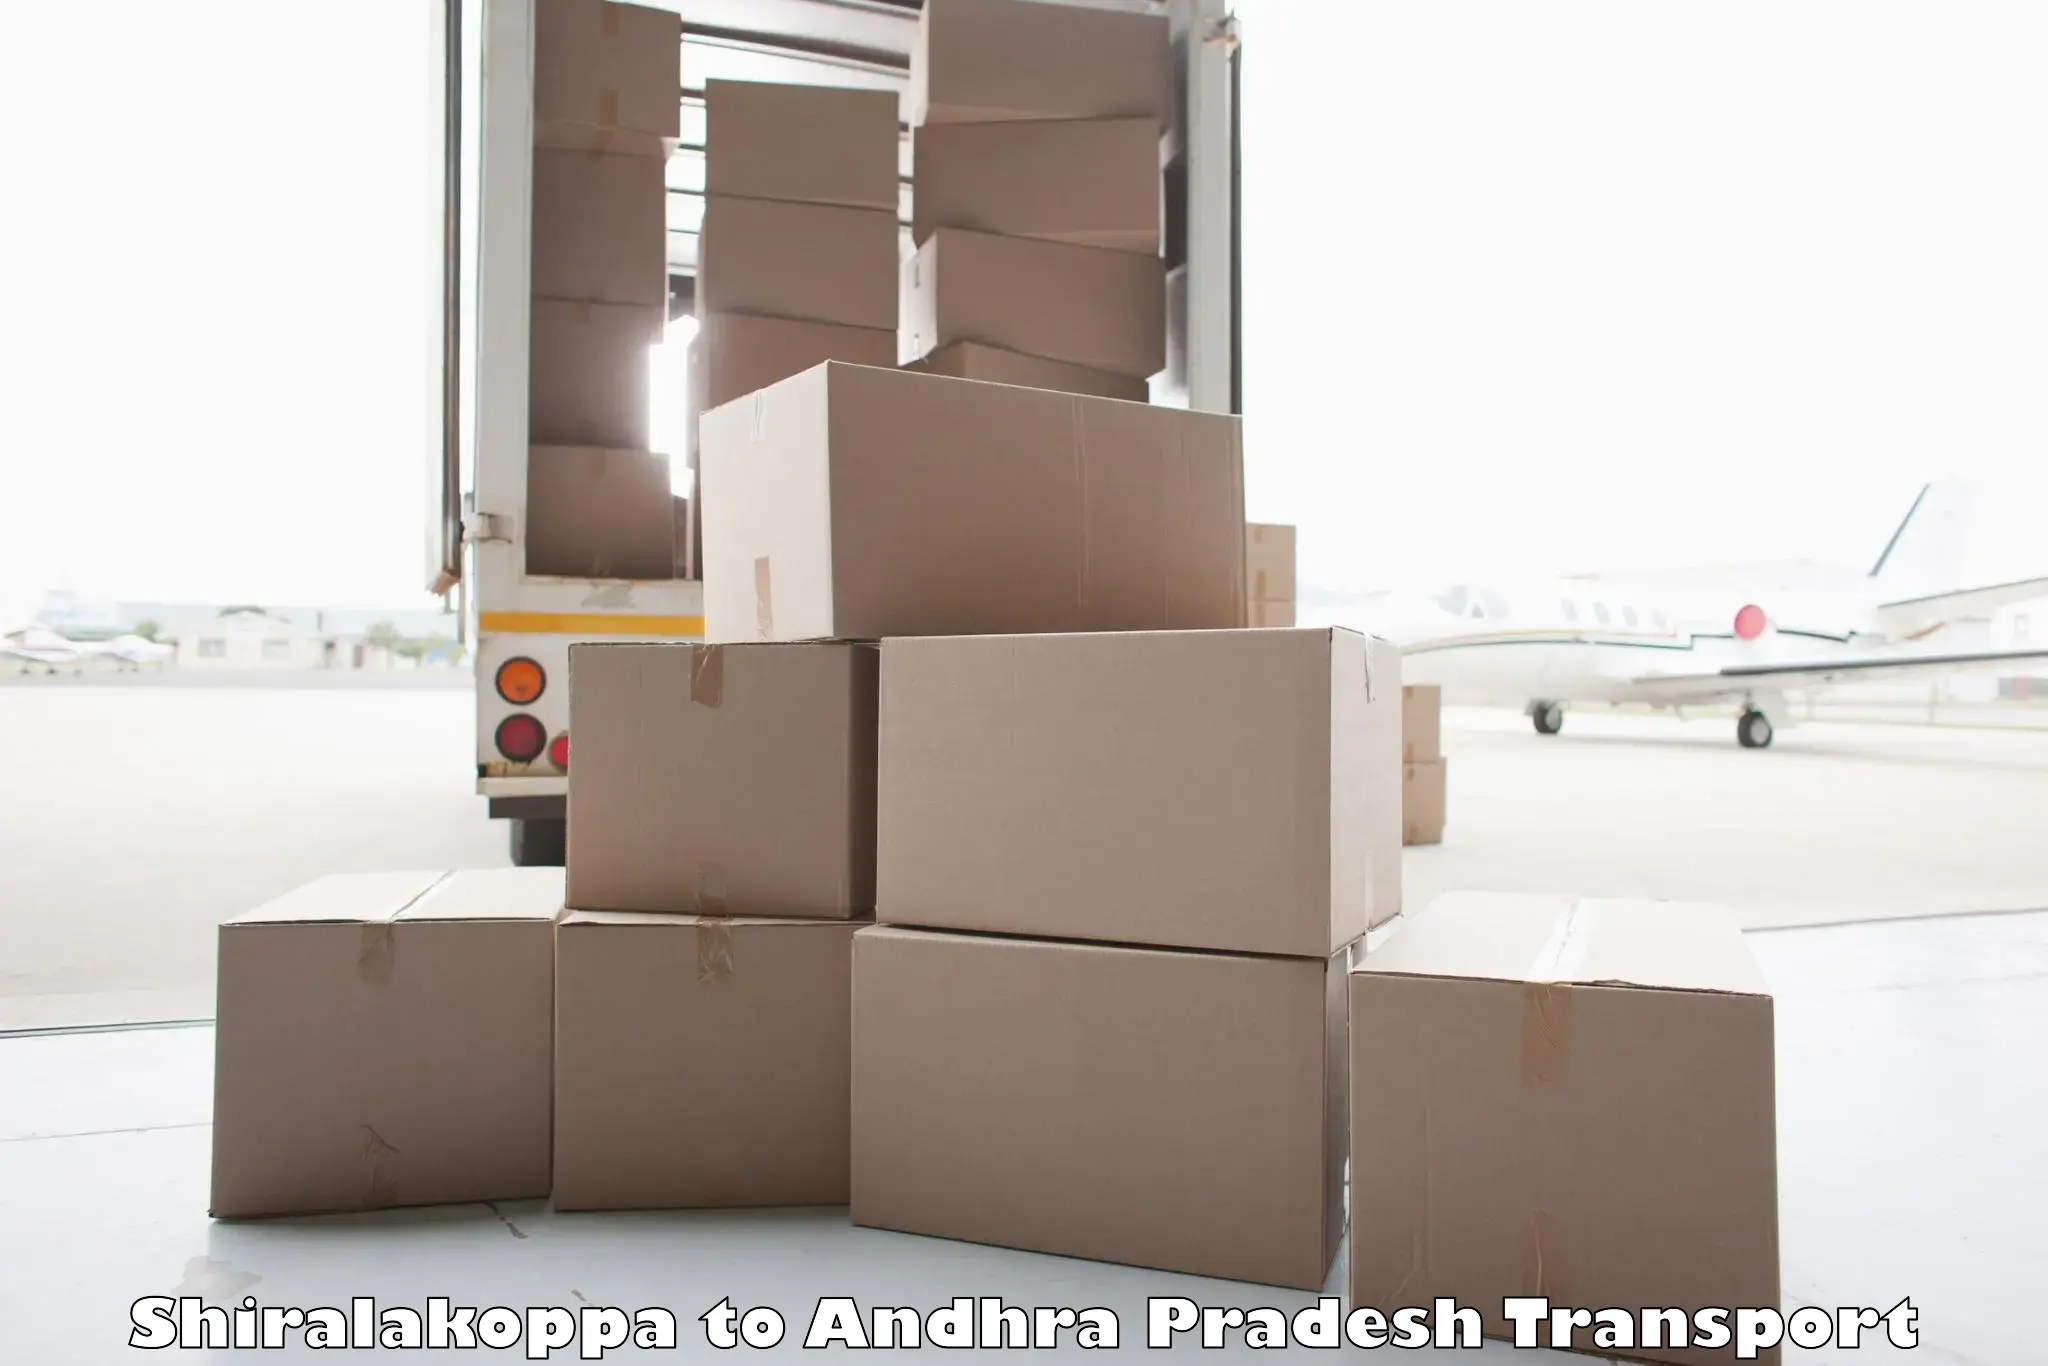 Land transport services Shiralakoppa to Andhra Pradesh